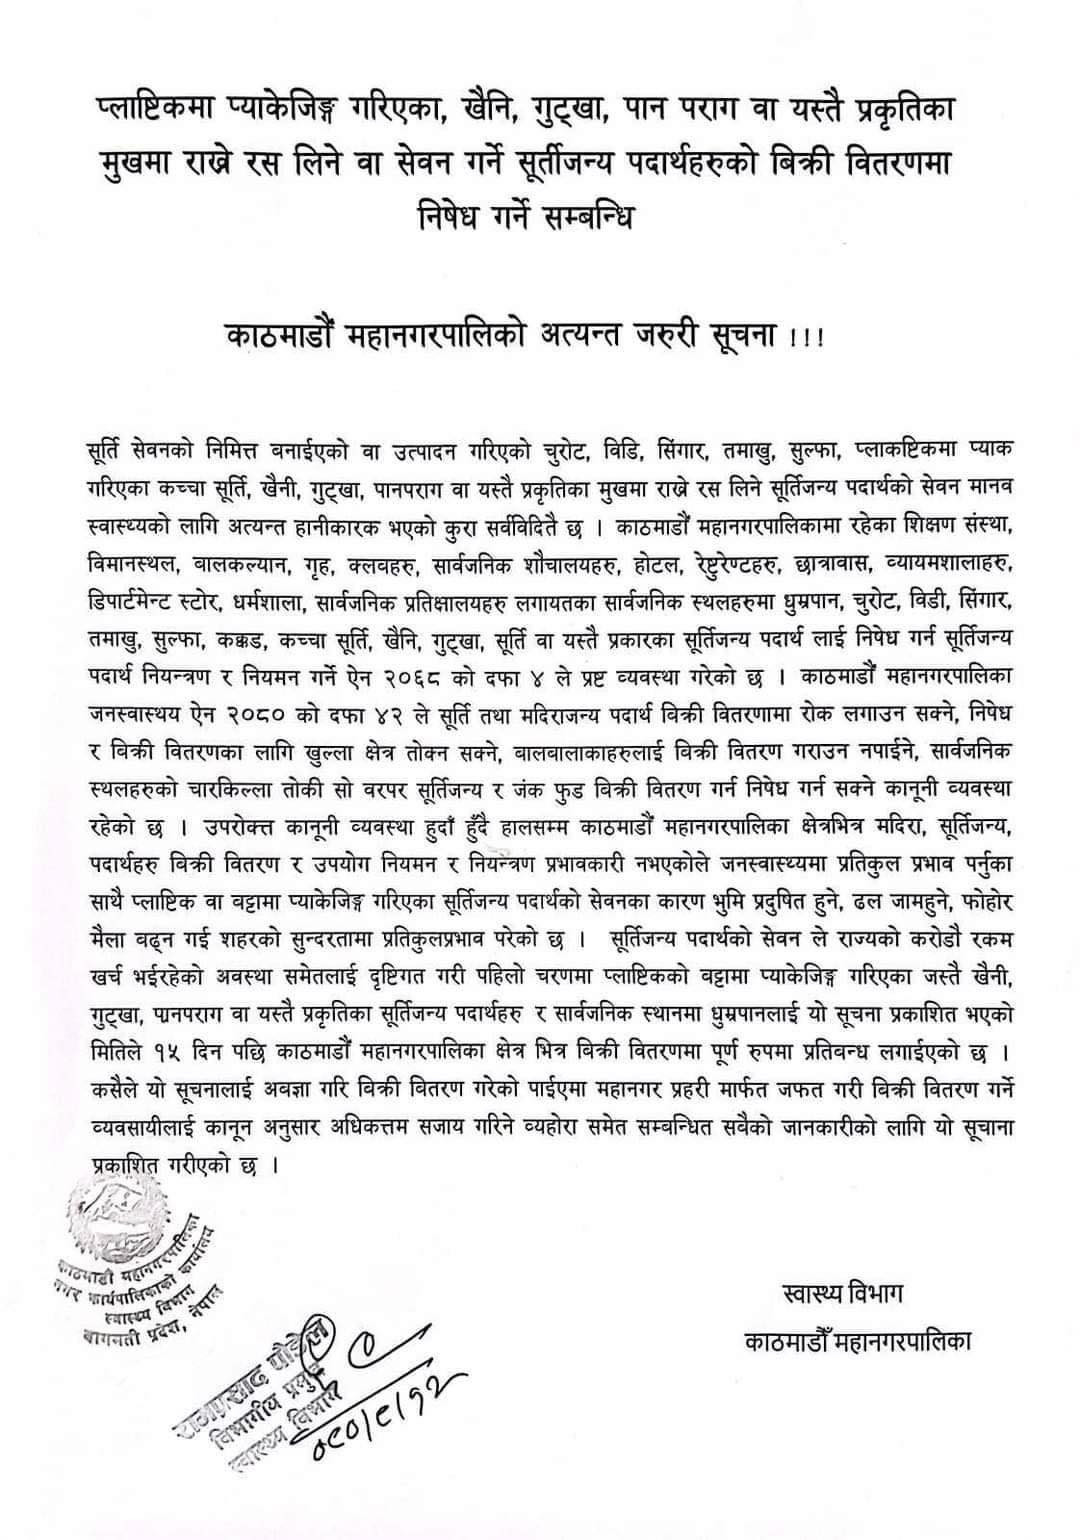 kathmandu-mahanagar-notice-1701185042.jpg